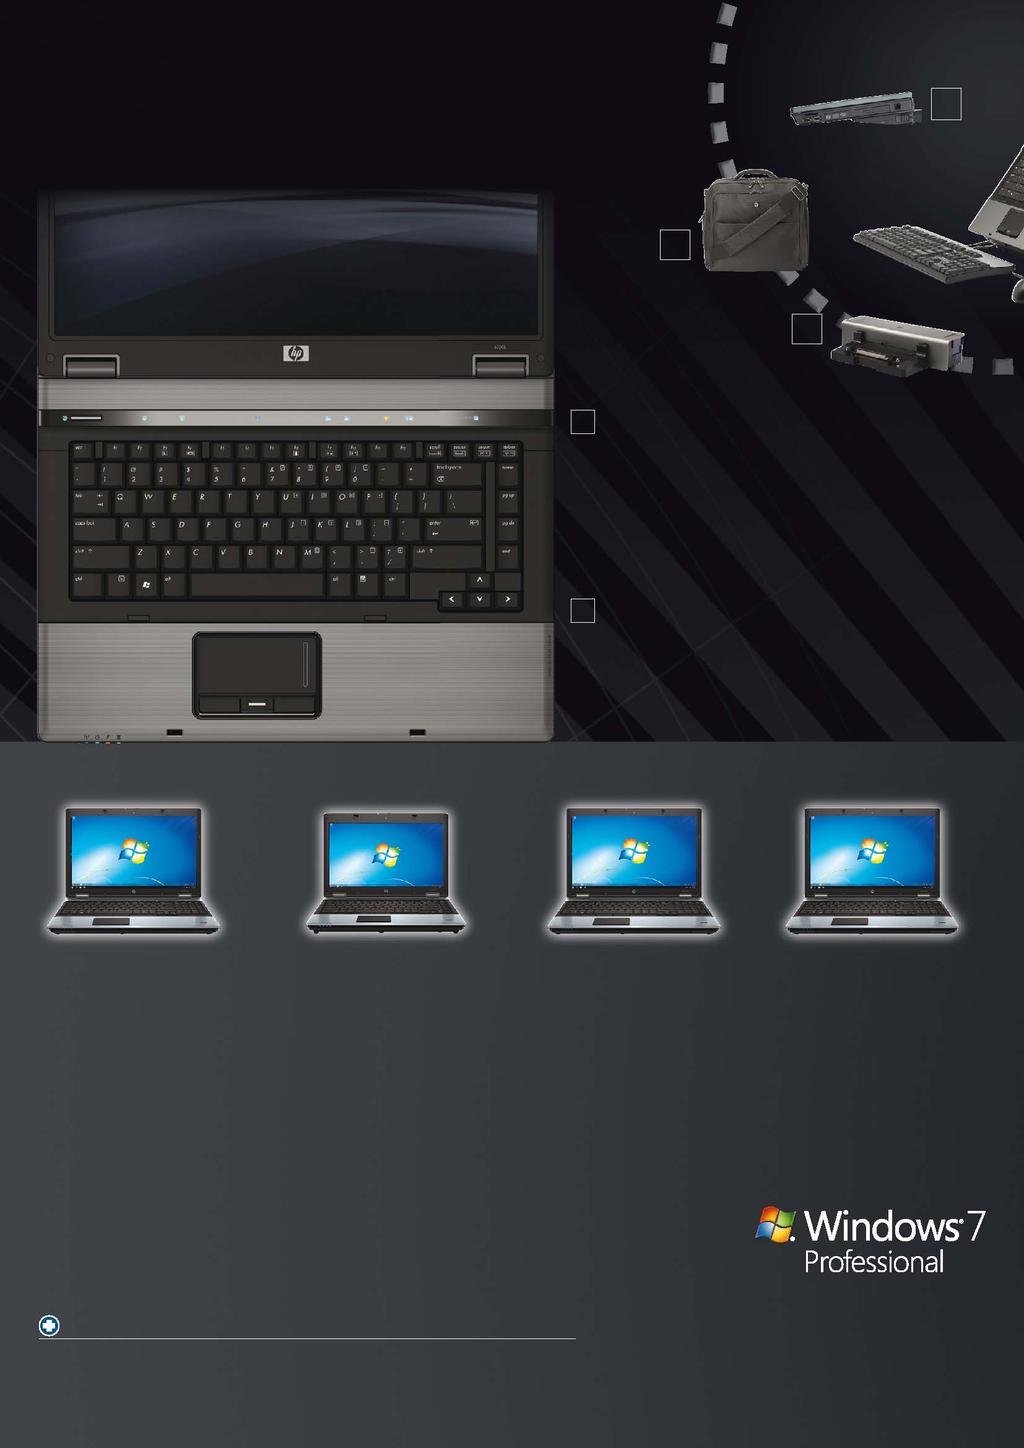 HP Compaq Business Notebook PC s, van de serie (b) en (m): elegant design, innoverende en bedrijfskritische kenmerken.